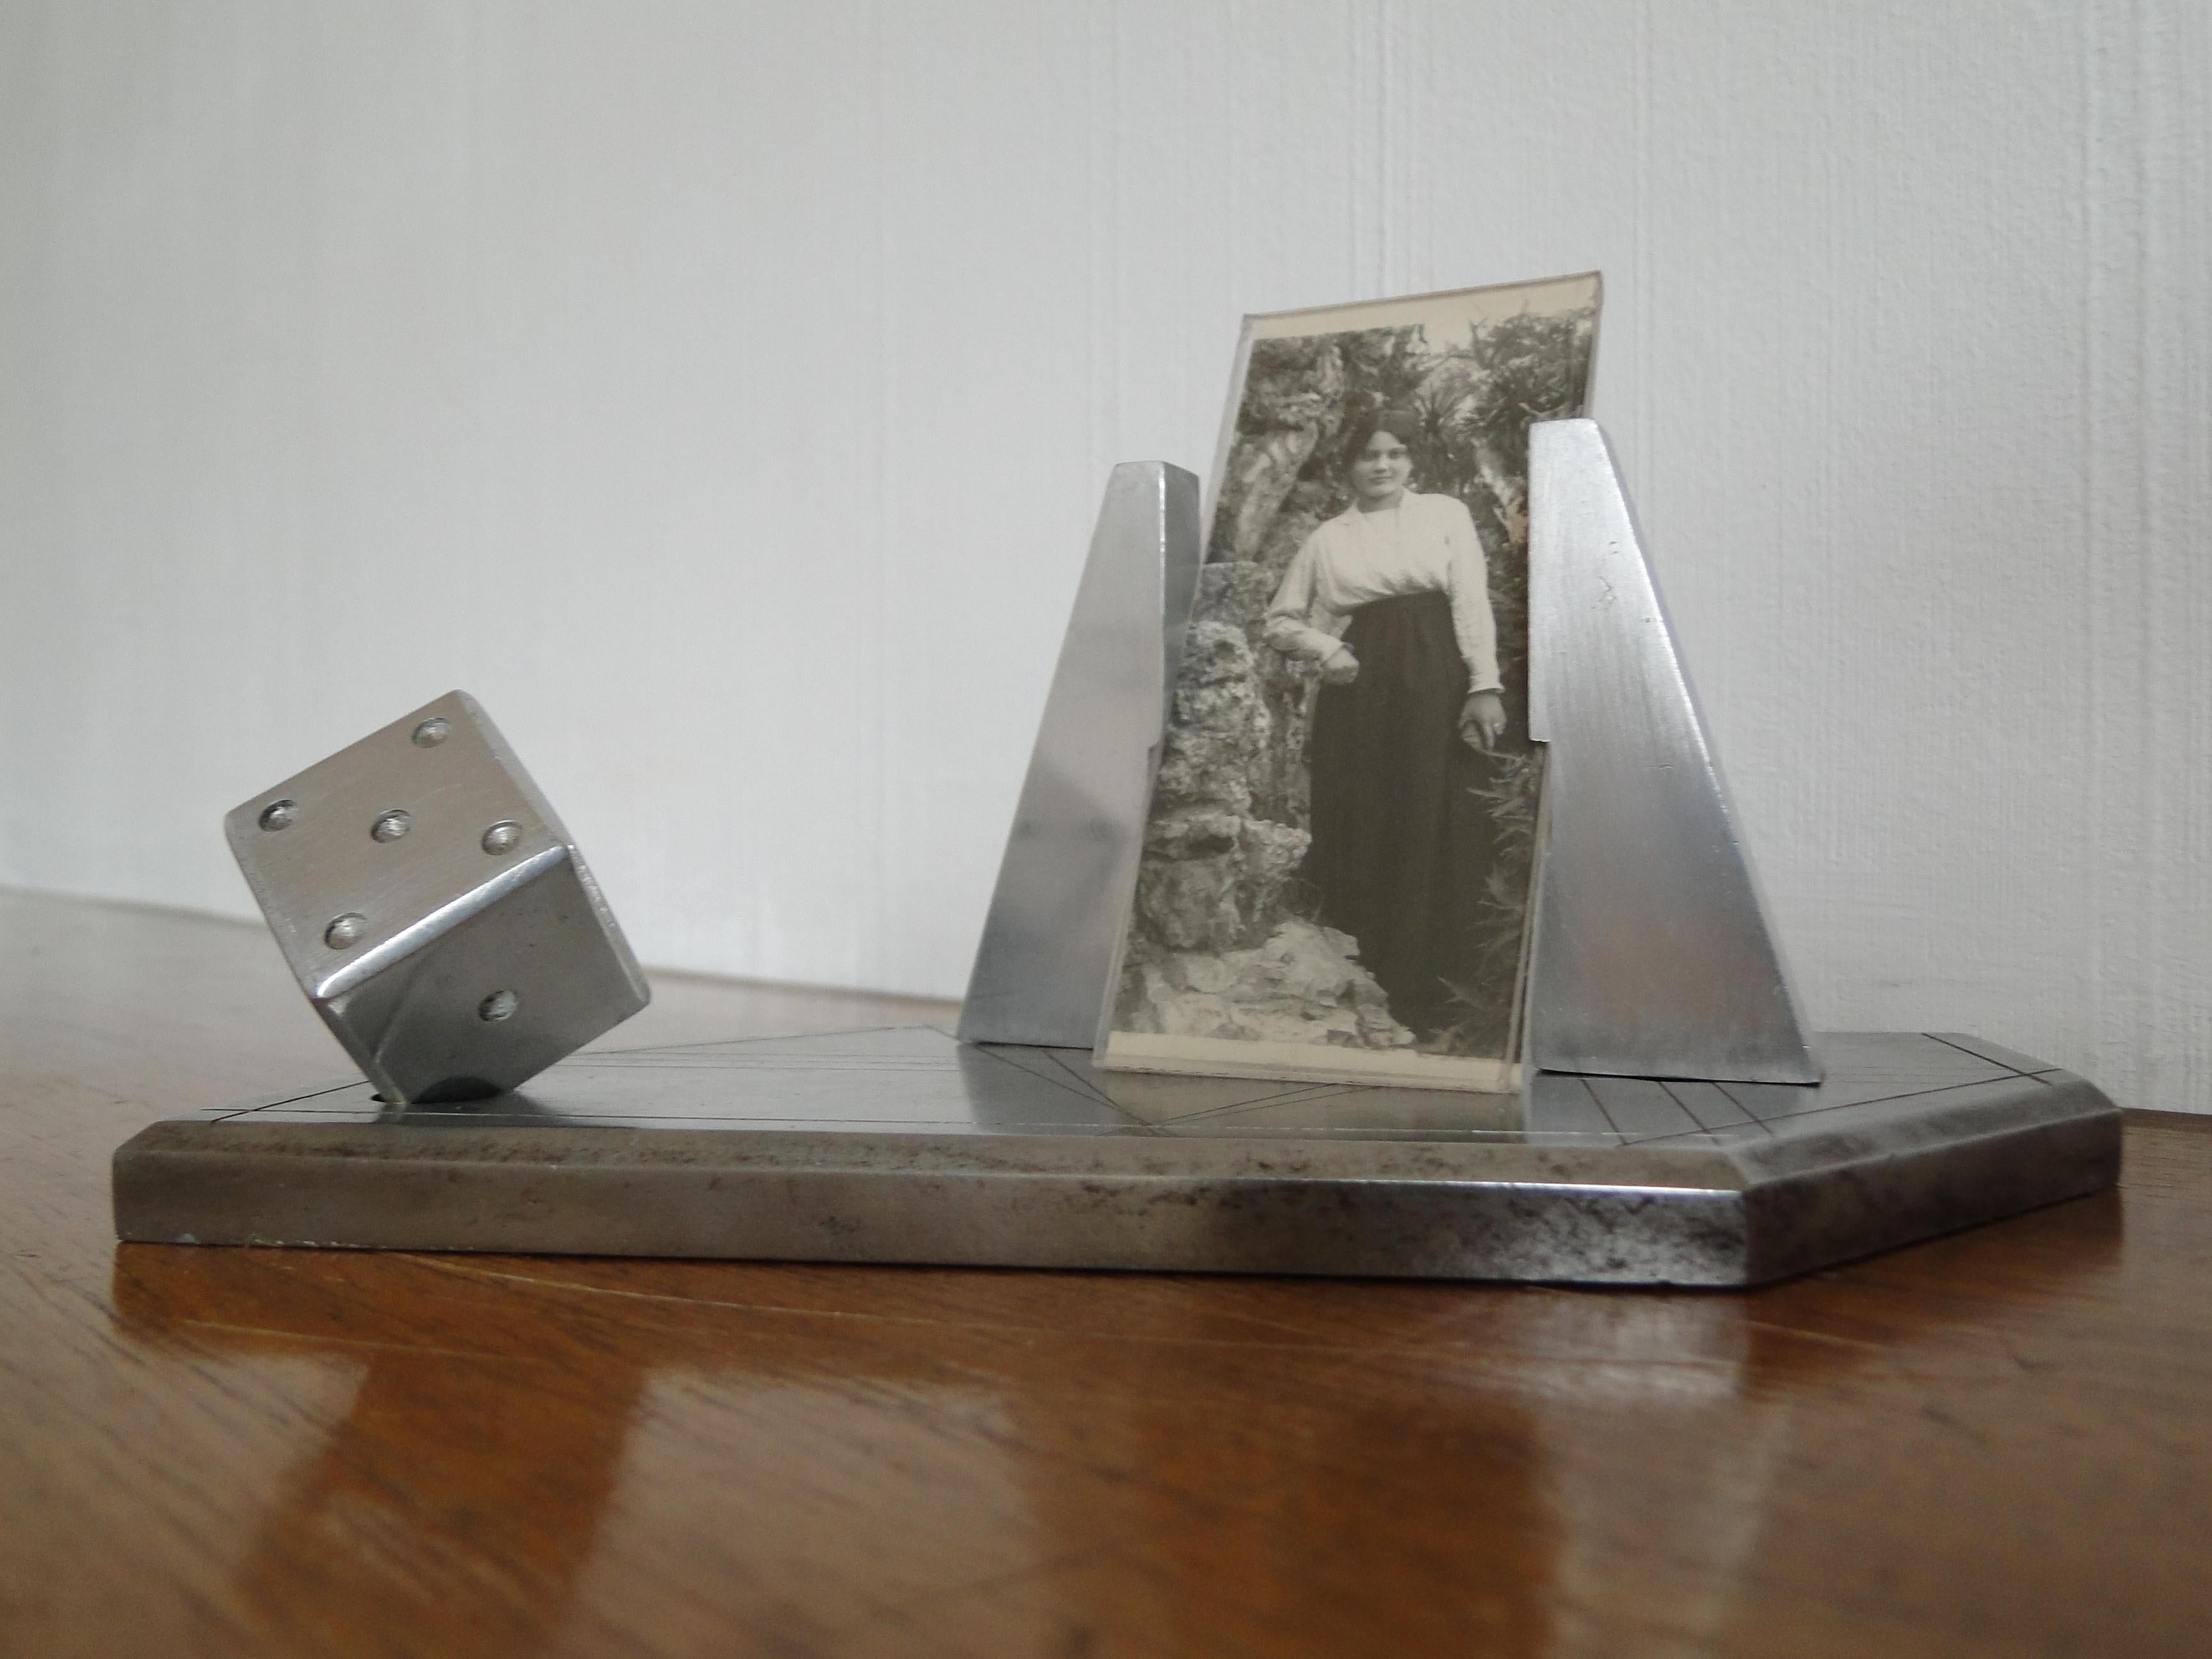 Rare für Sammler Metall und Aluminium Fotorahmen der 1930er Jahre Frankreich mit einem Würfel.
Sehr schöner Artikel.
Guter Zustand.